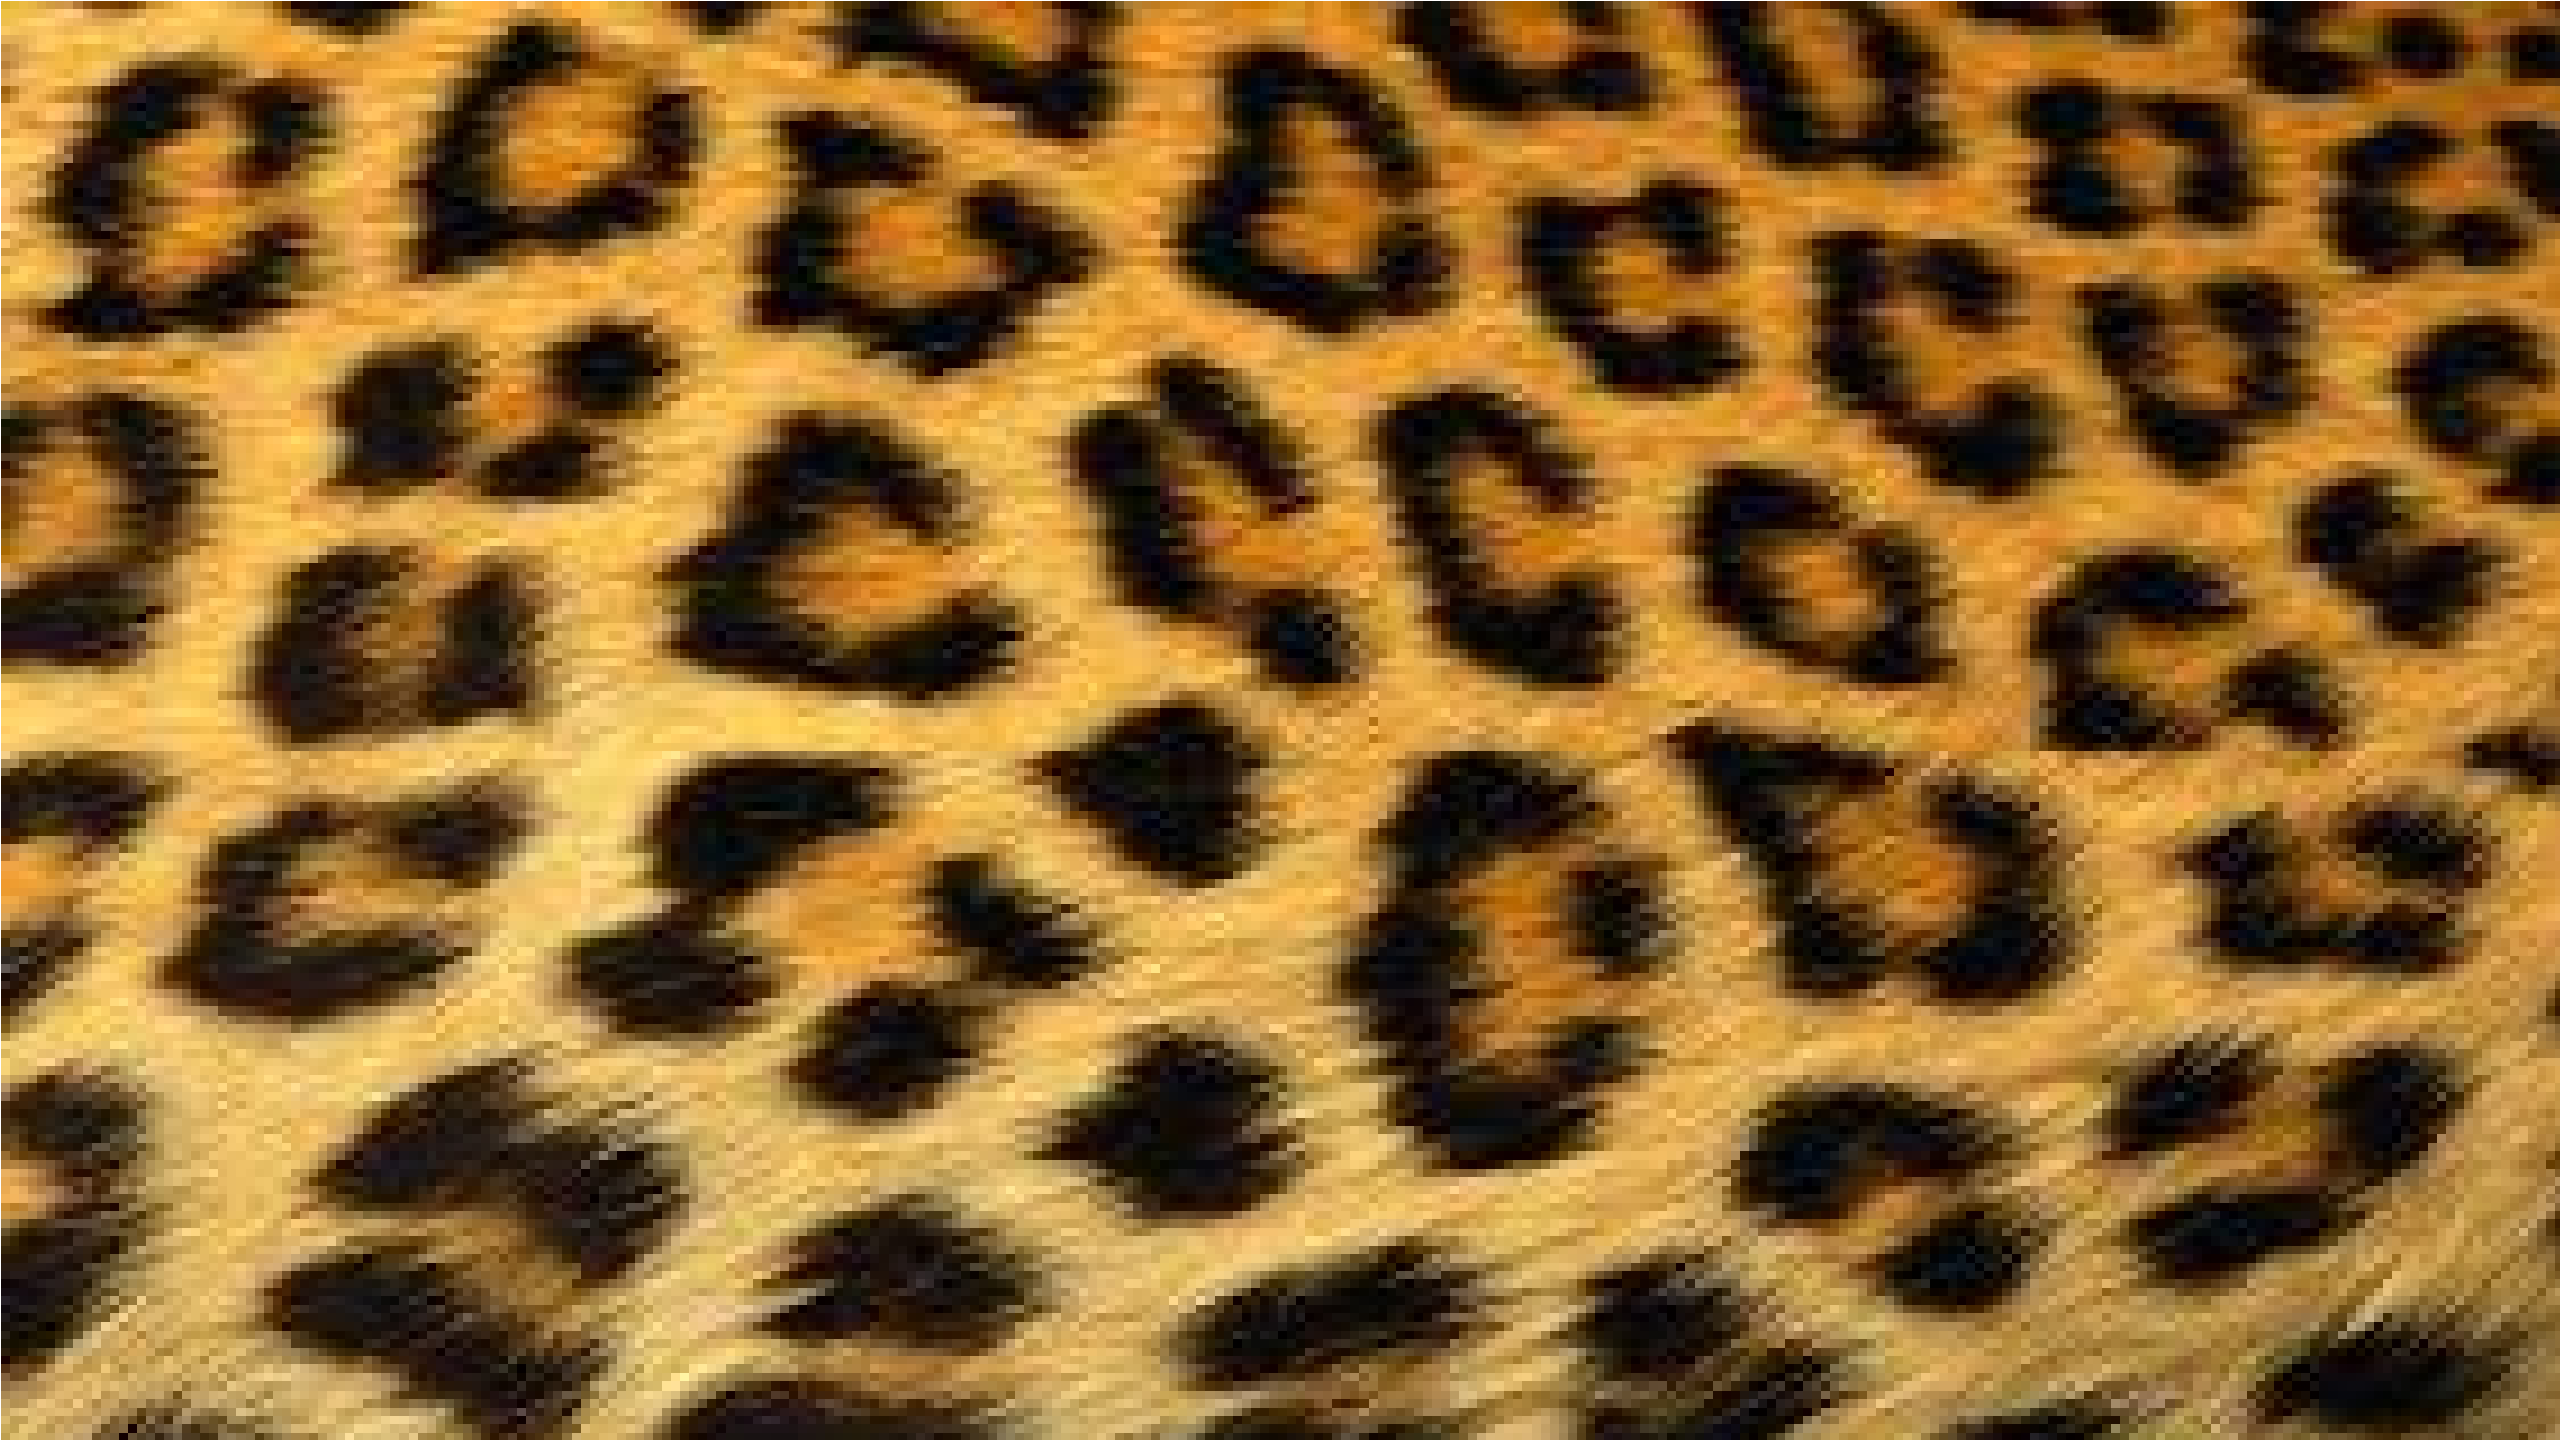 Large Cheetah Fur Wallpaper - Cheetah Wallpaper 37801731 - Fanpop